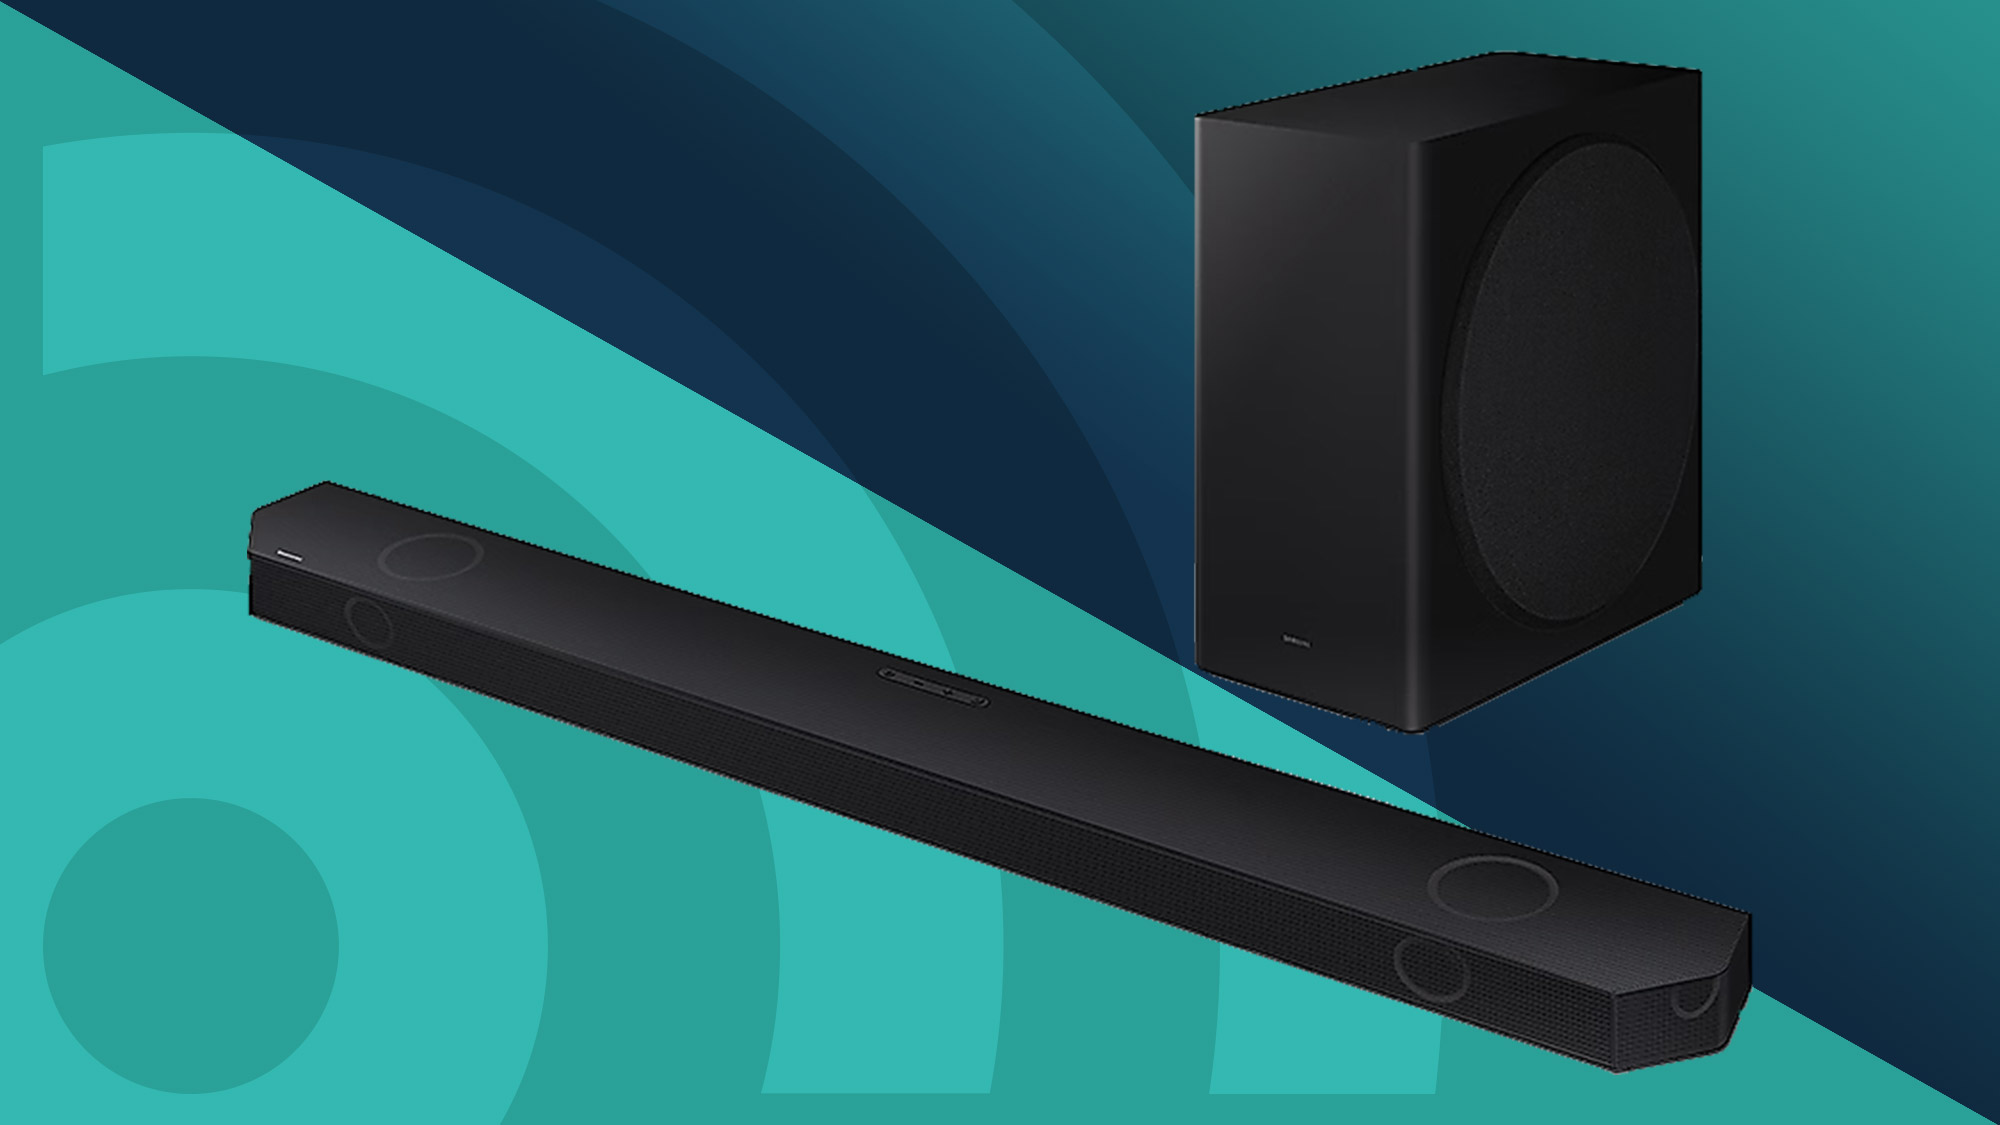 5.1 Virtual Speaker Setup - Dolby